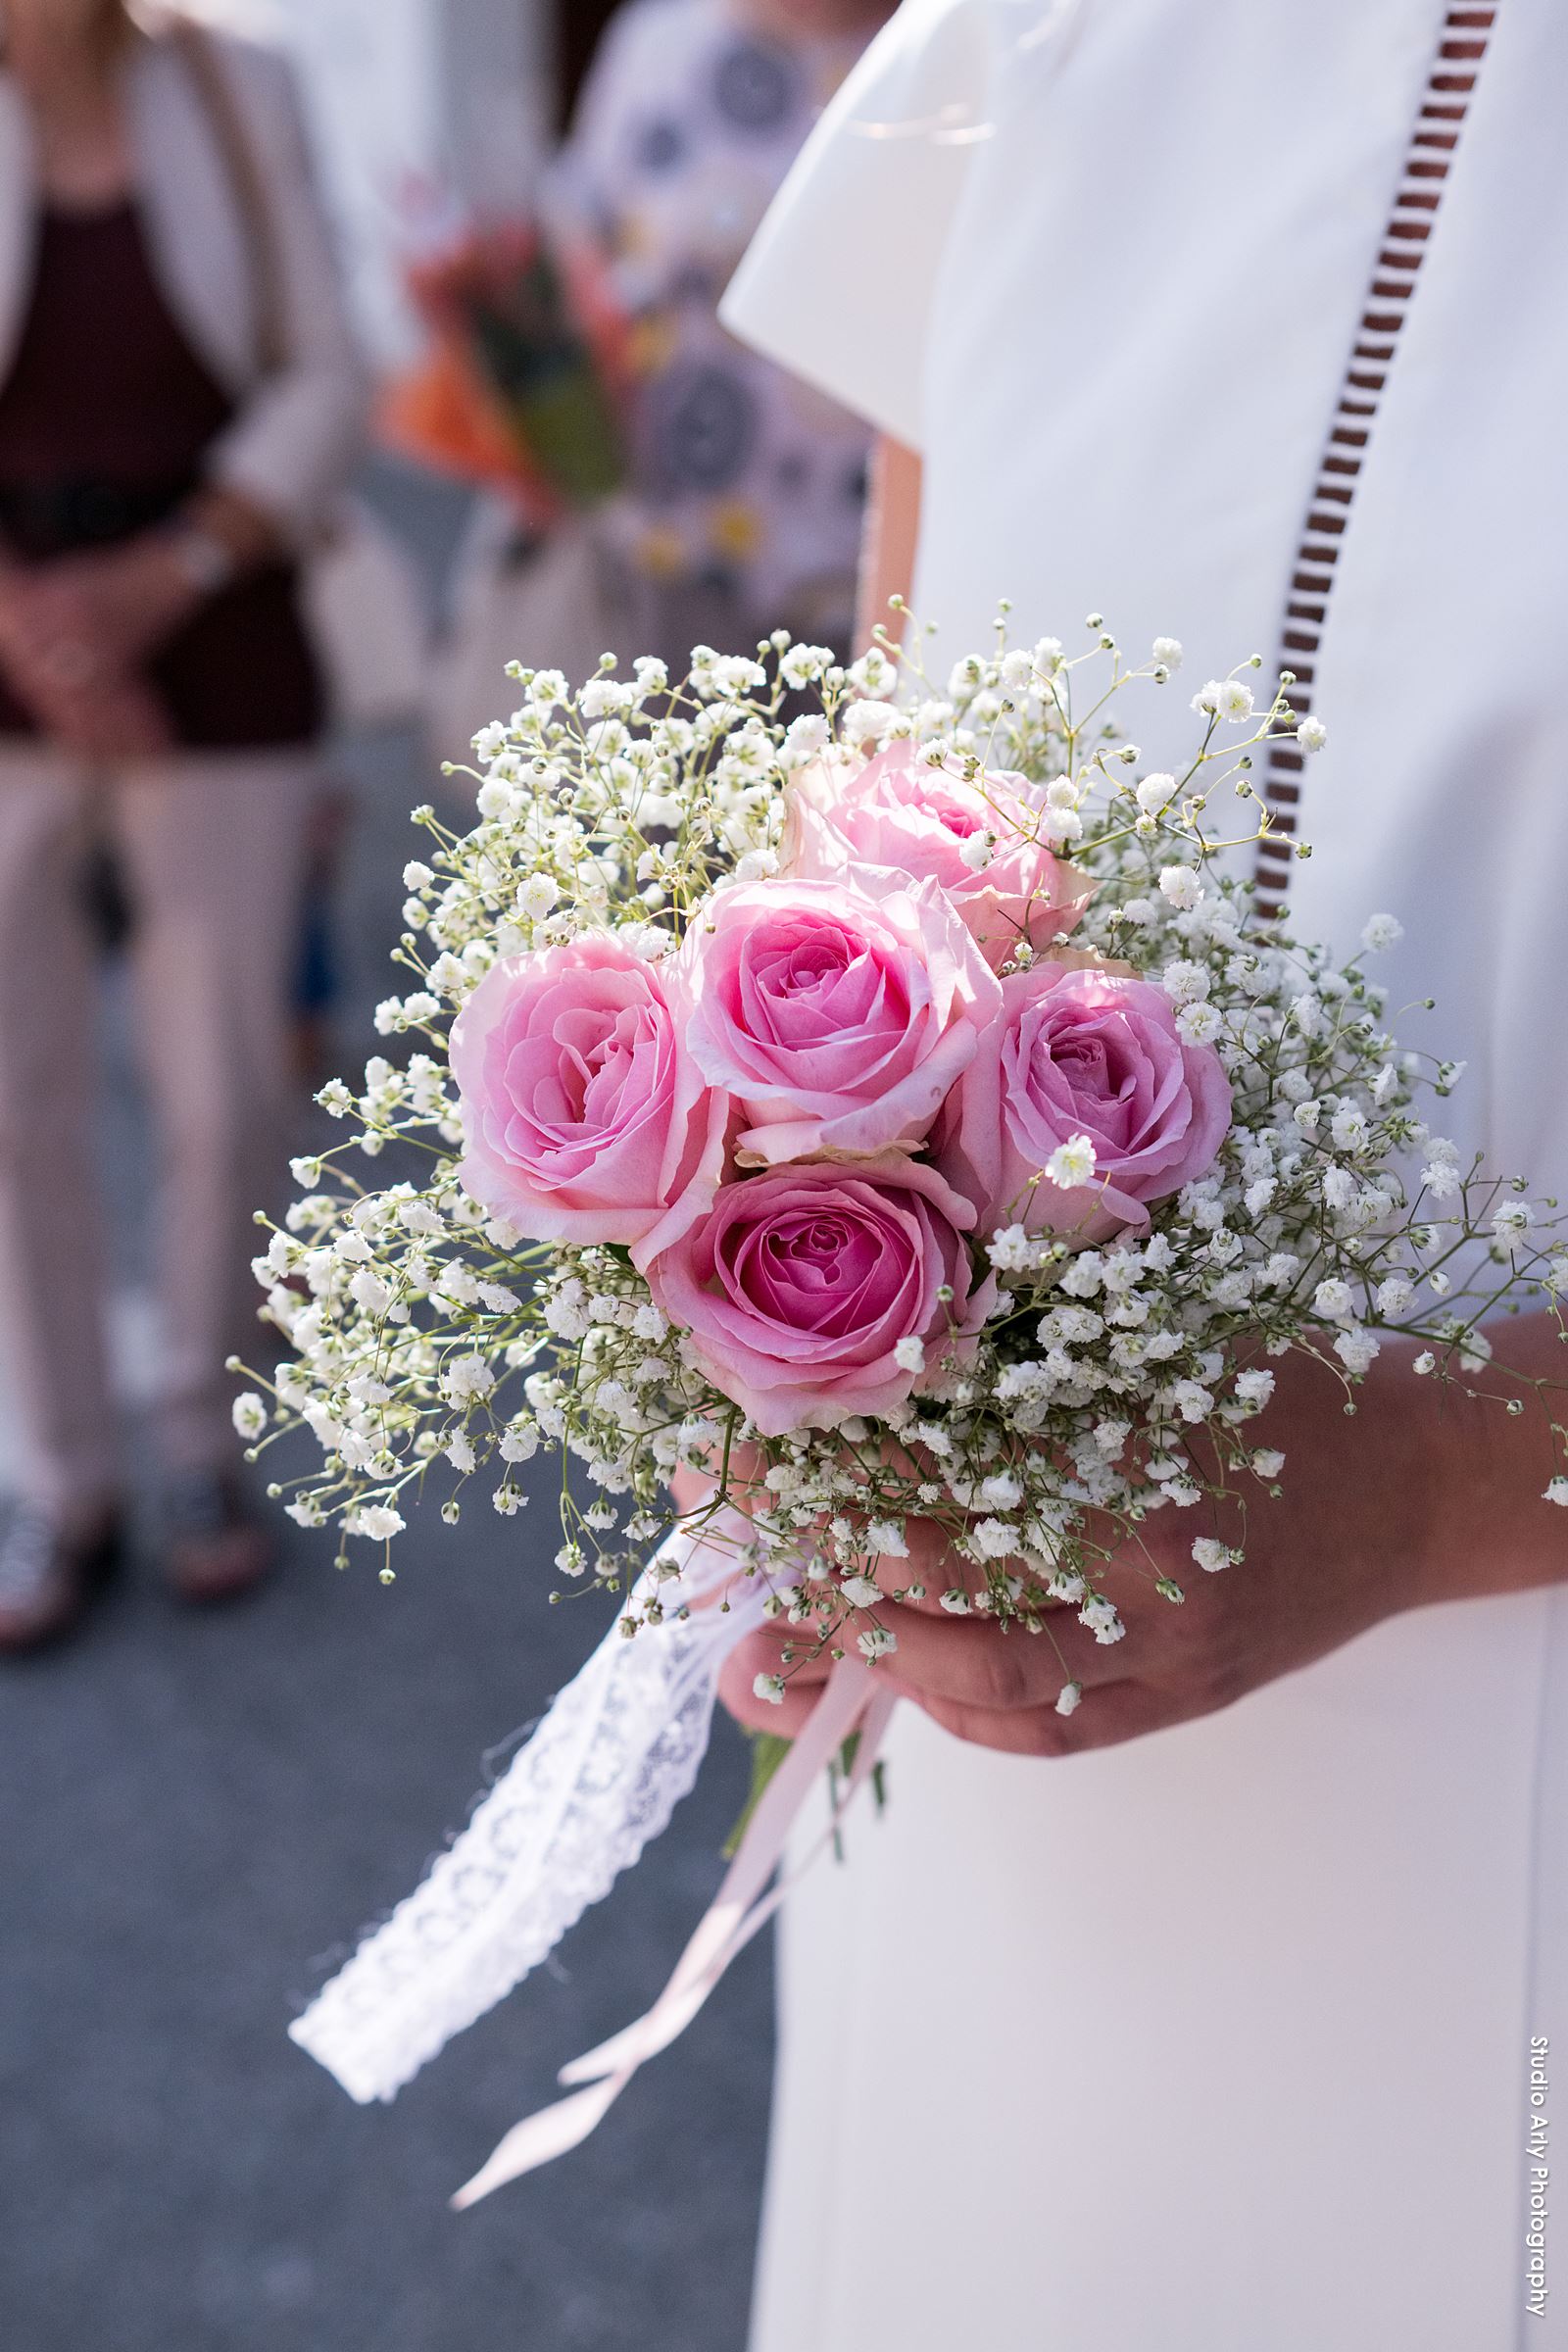 Mariage en Beaufortain : bouquet de la mariée